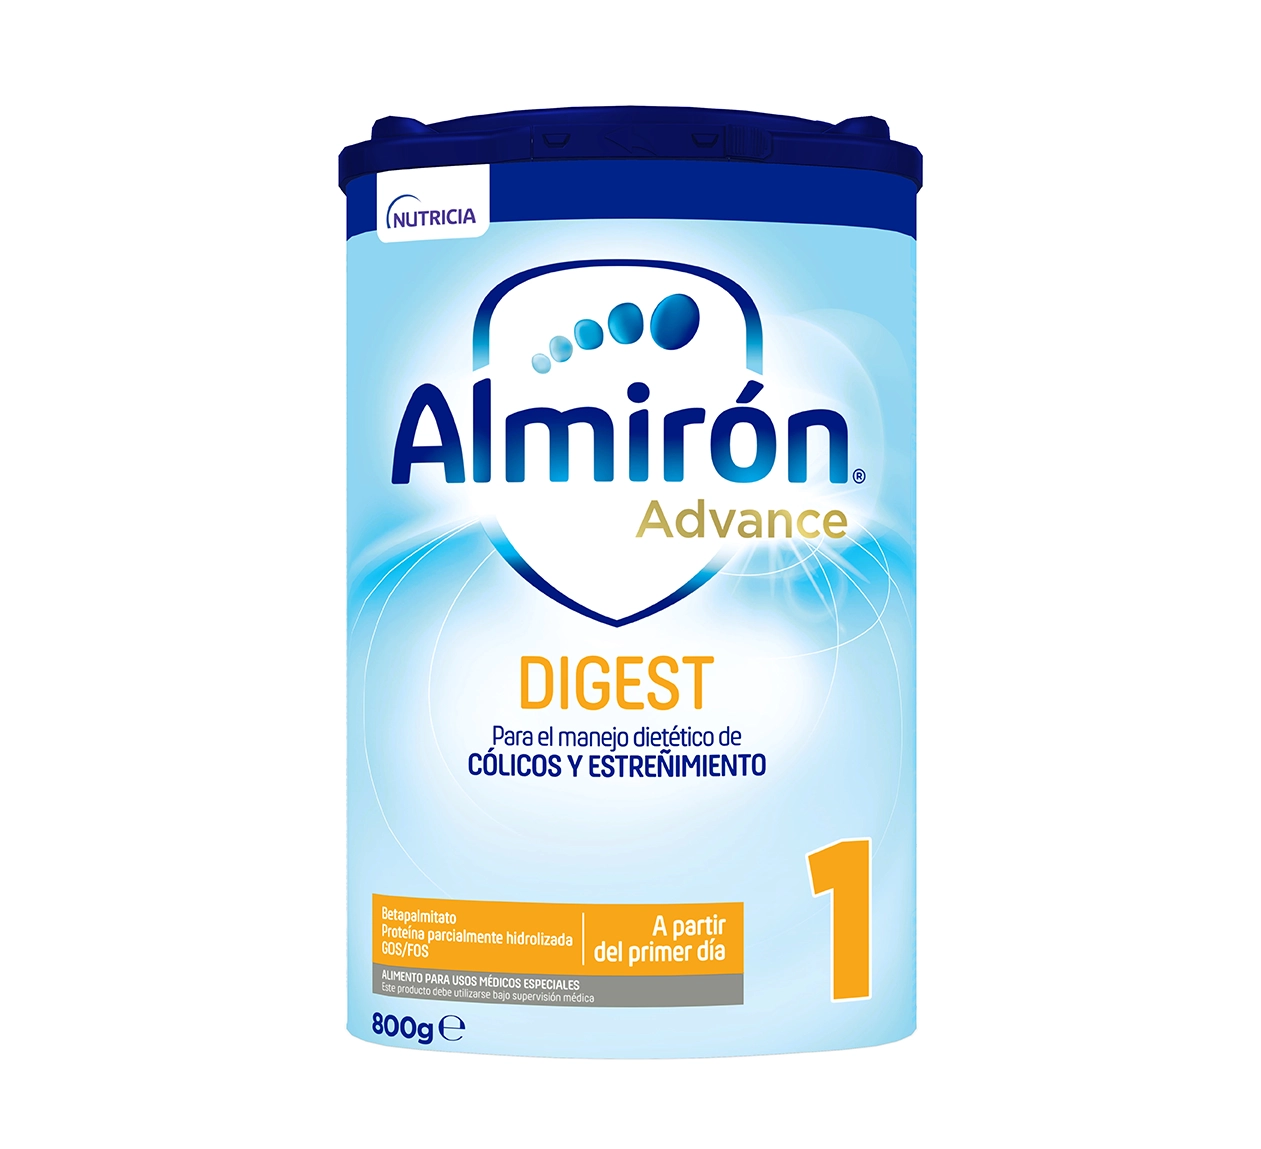 Almirón Advance Digest 1 800g – Tienda Almiclub